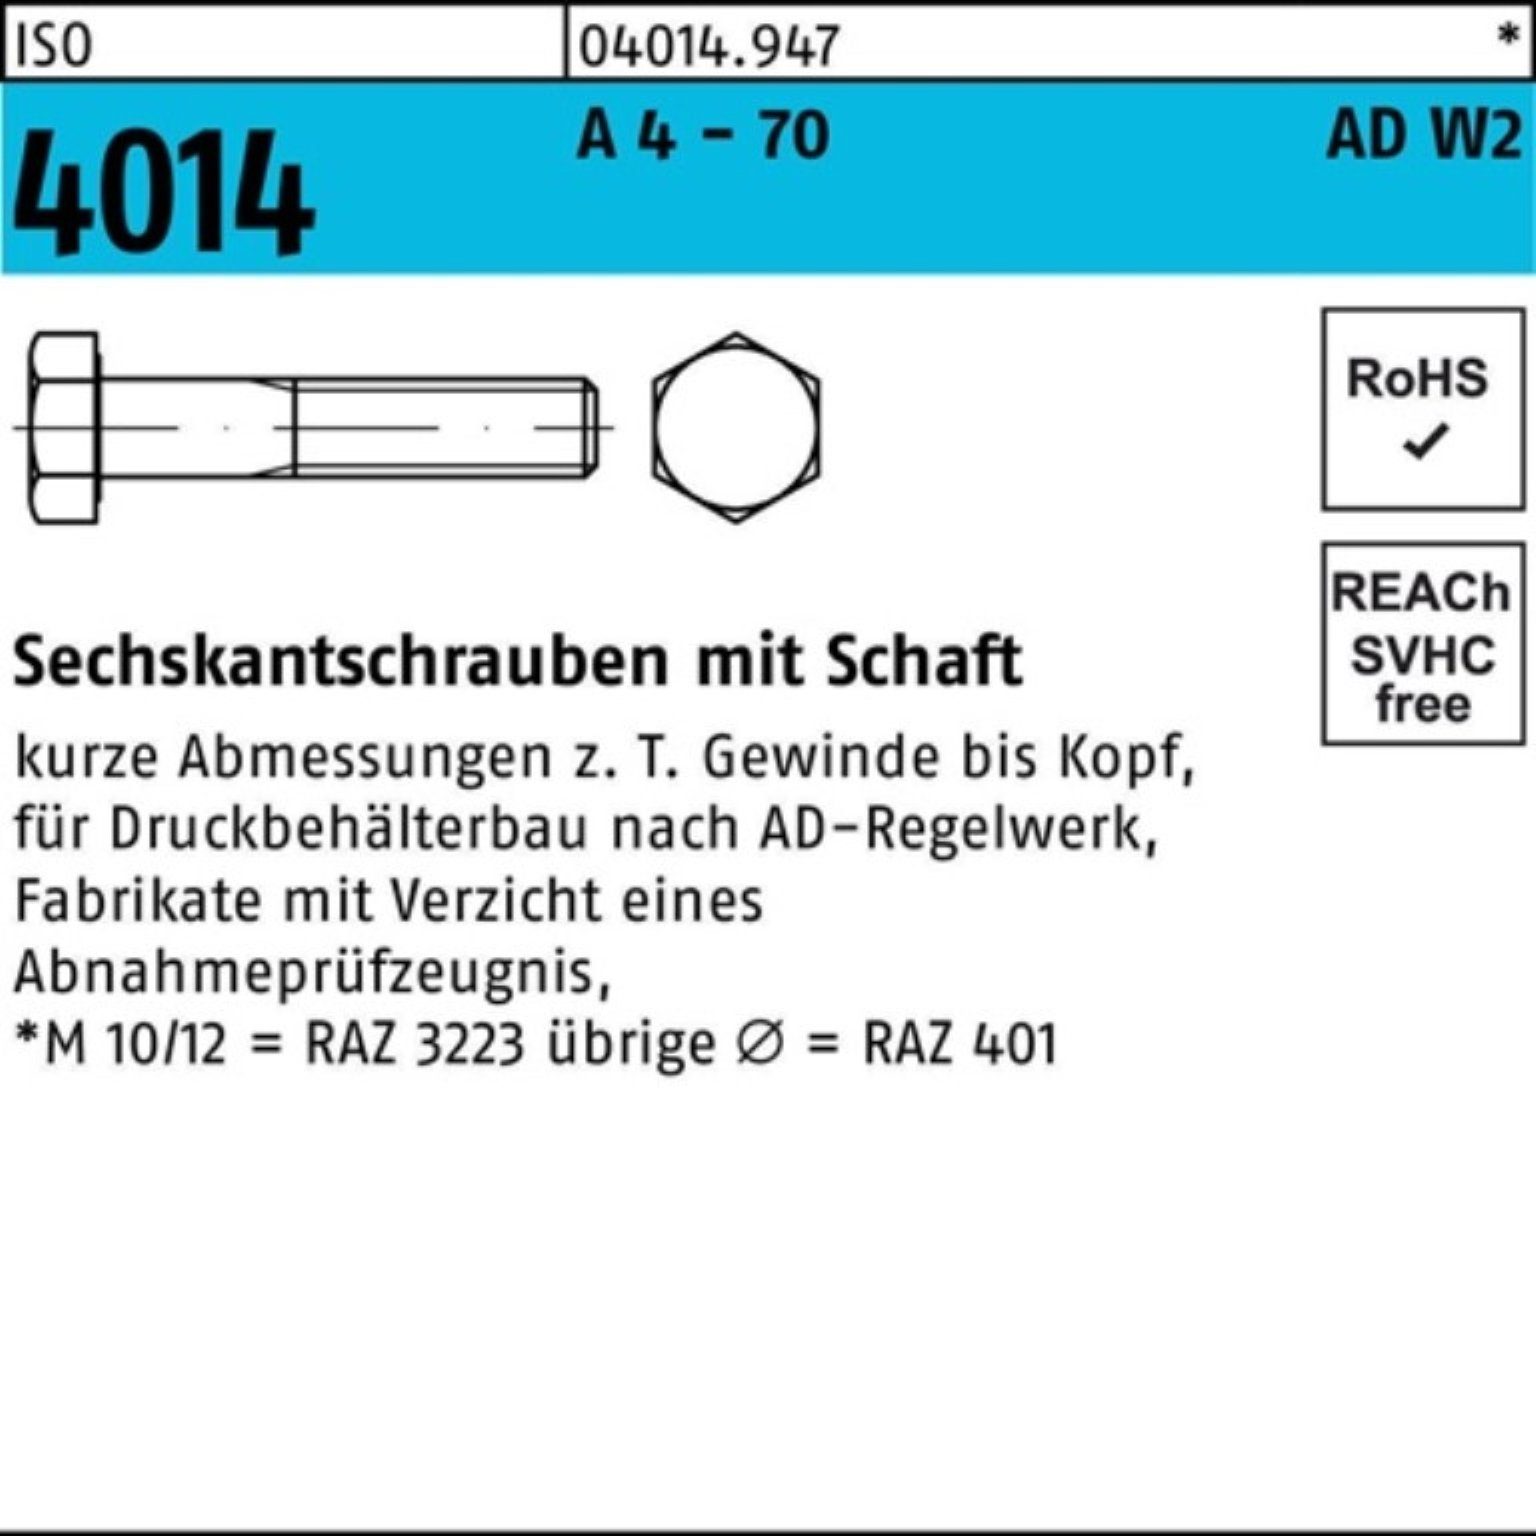 Bufab Sechskantschraube 100er Pack Sechskantschraube ISO 4014 Schaft M10x 140 A 4 - 70 AD-W2 1